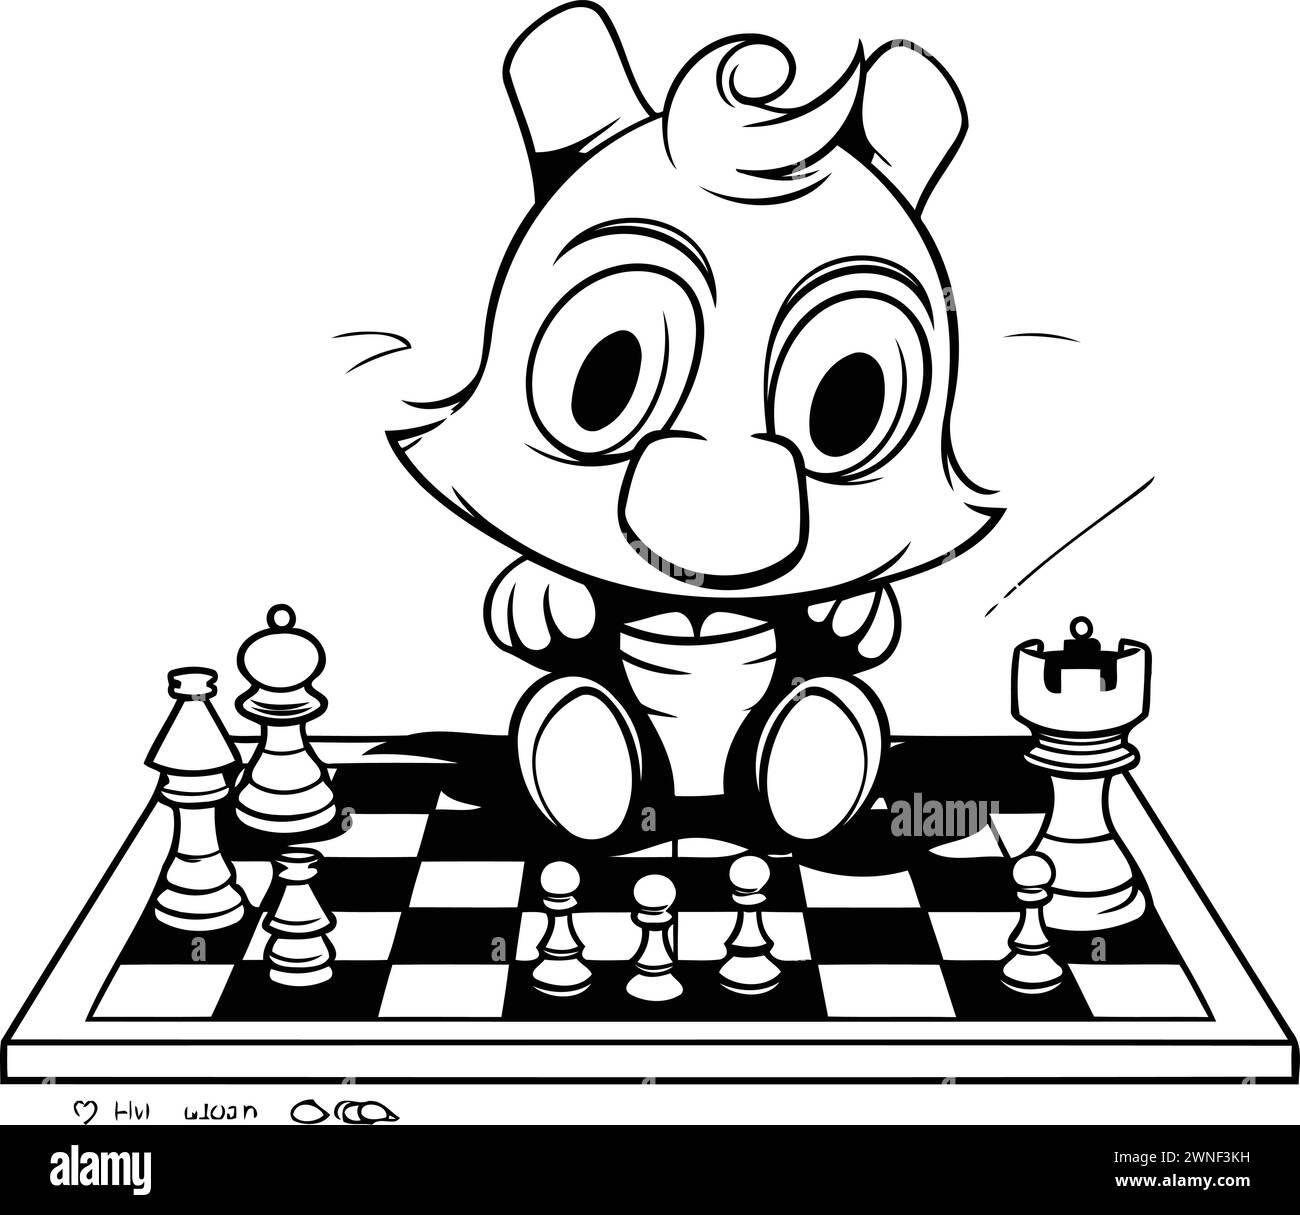 Illustration de dessin animé noir et blanc de Chess Knight Character Coloring Book Illustration de Vecteur